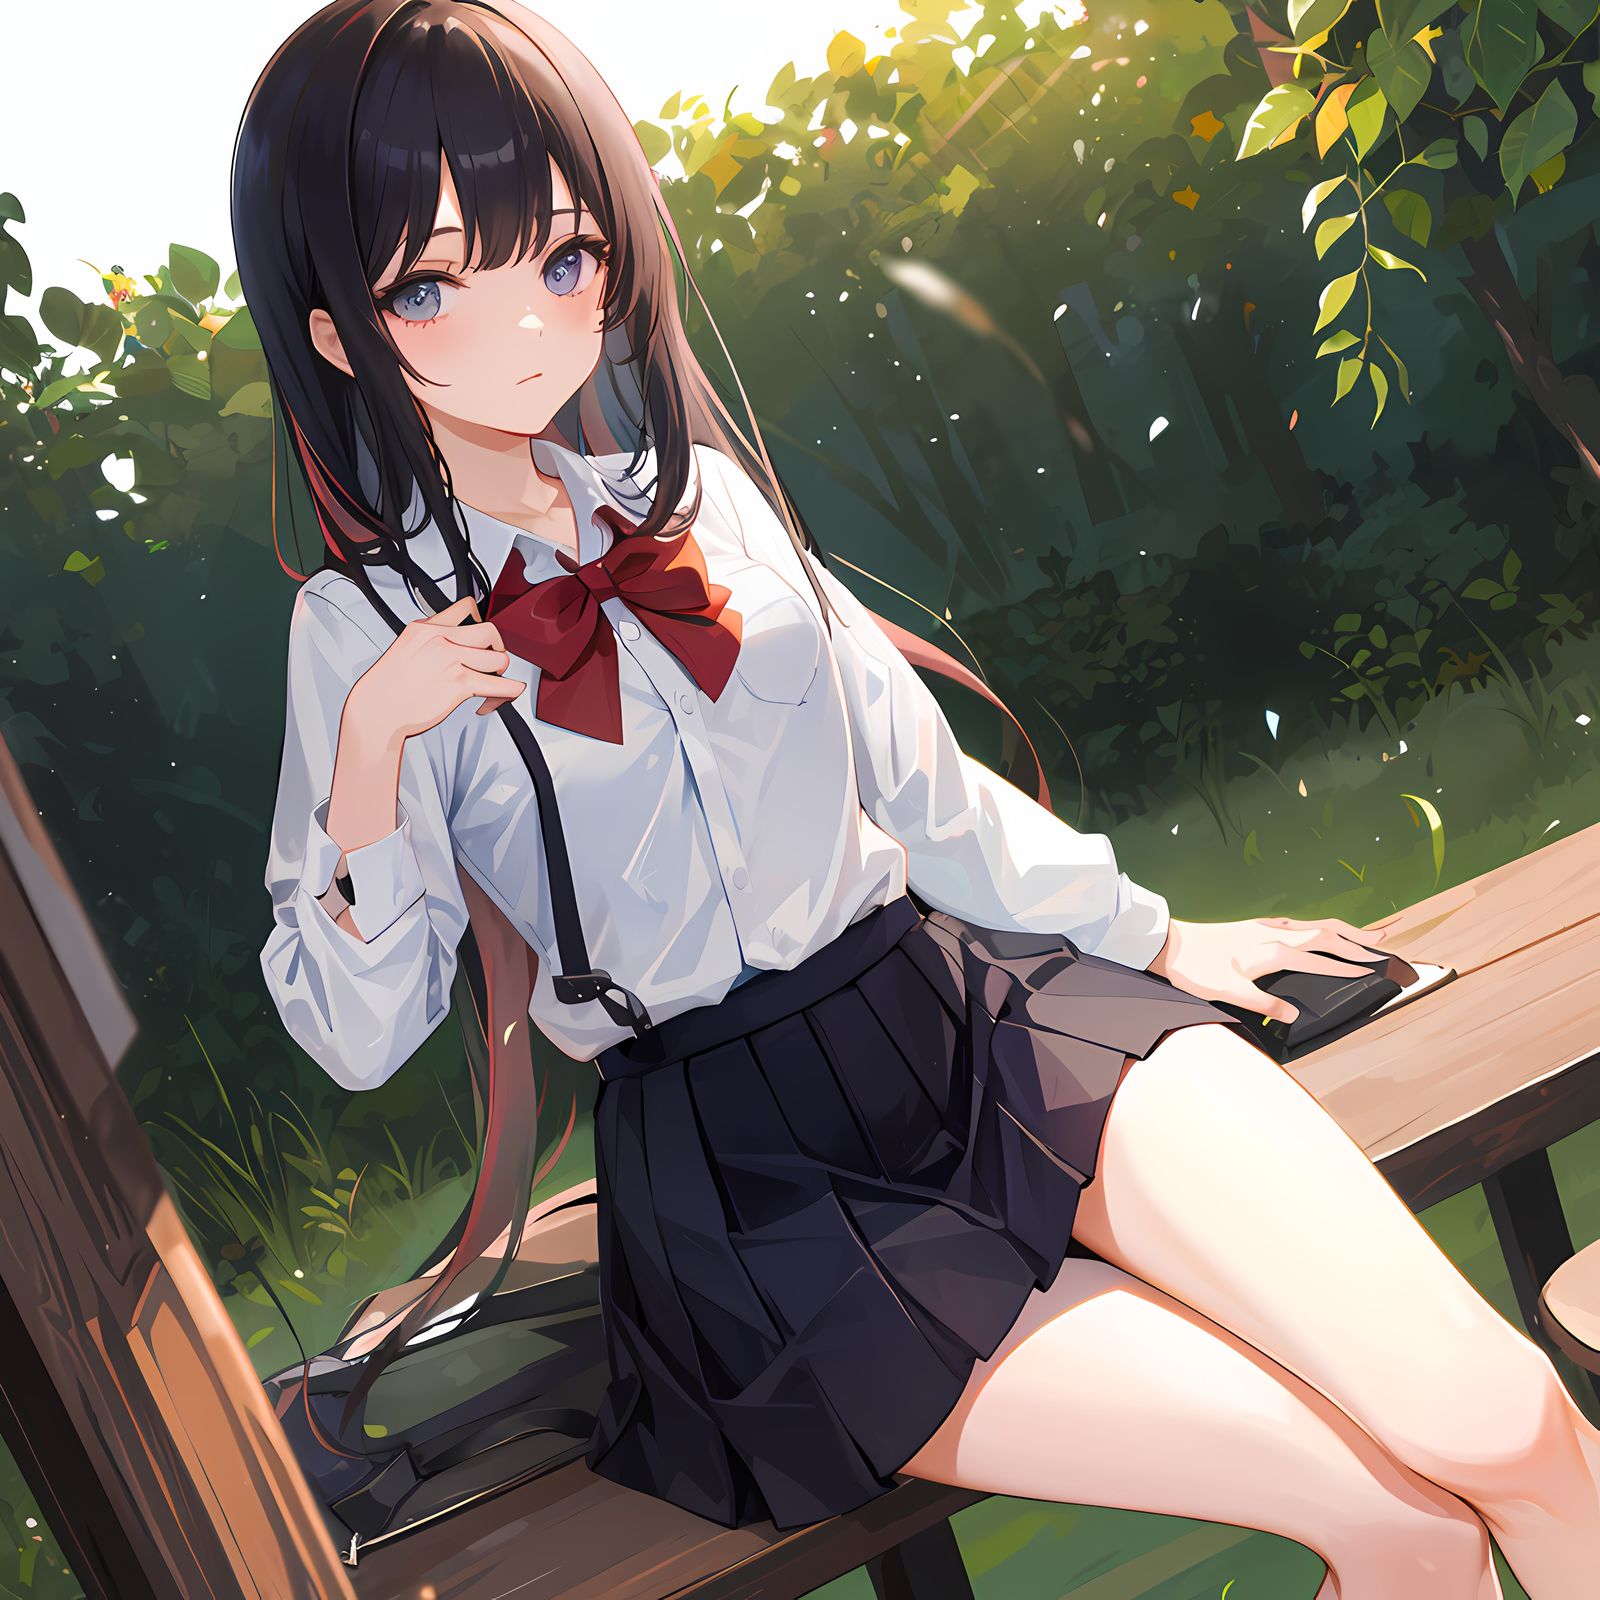 姑娘在公园里坐在长椅上，红色蝴蝶结巧妙地点缀着长发，身穿着白衬衫、黑裙子和红色领结，背景是树木、灌木、竹林和植物。

二次元插画名：公园的甜心姑娘